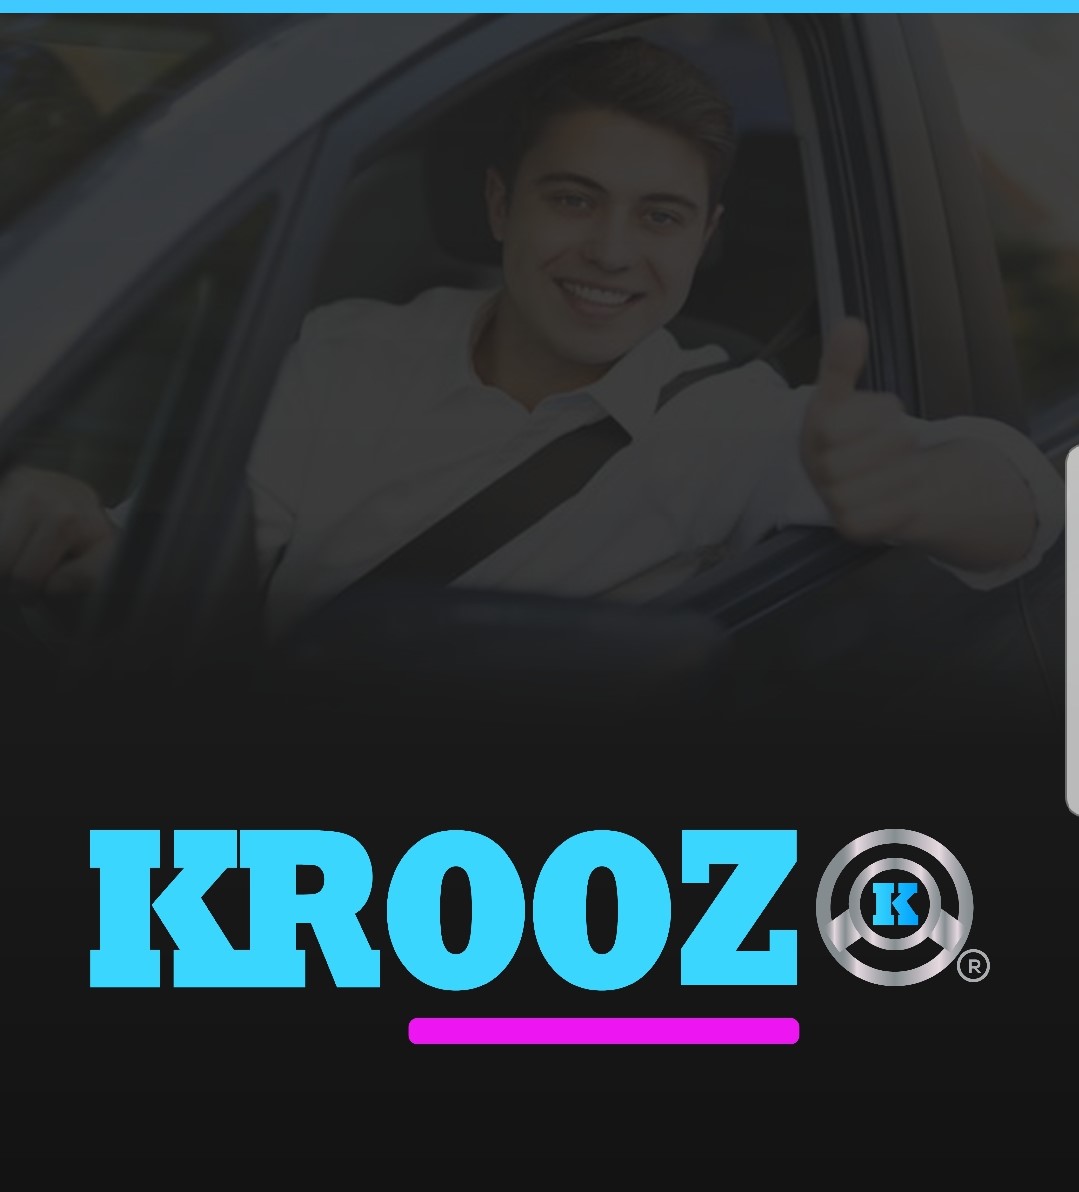 Download KROOZ apps